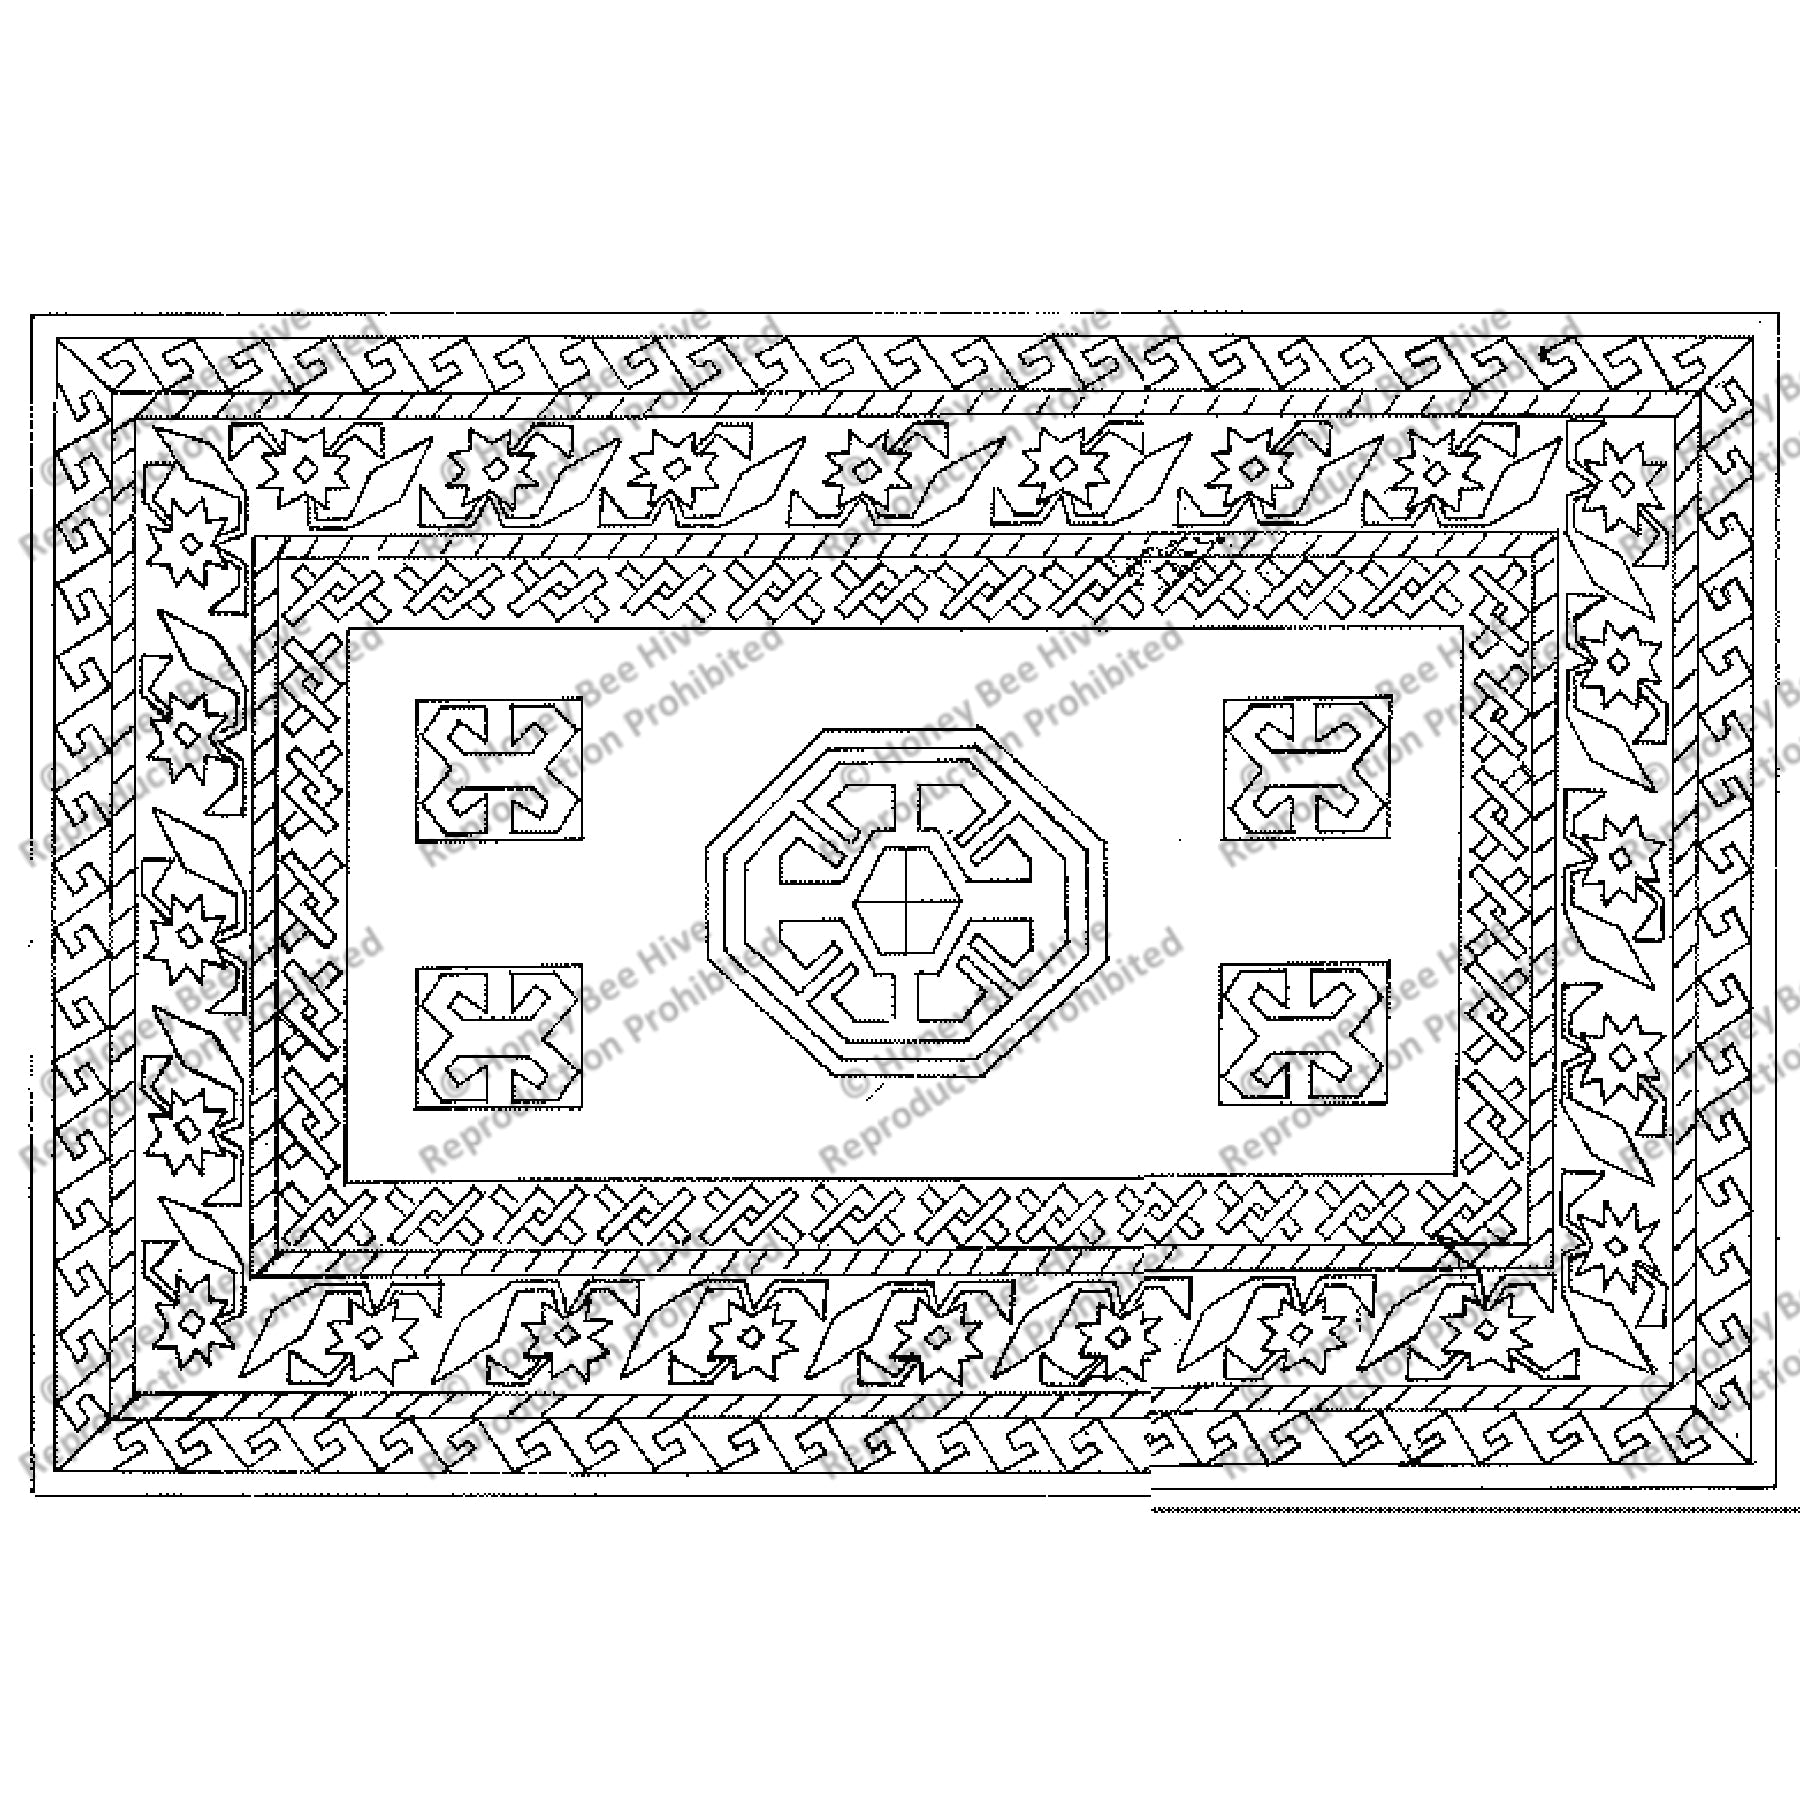 Jewel, rug hooking pattern